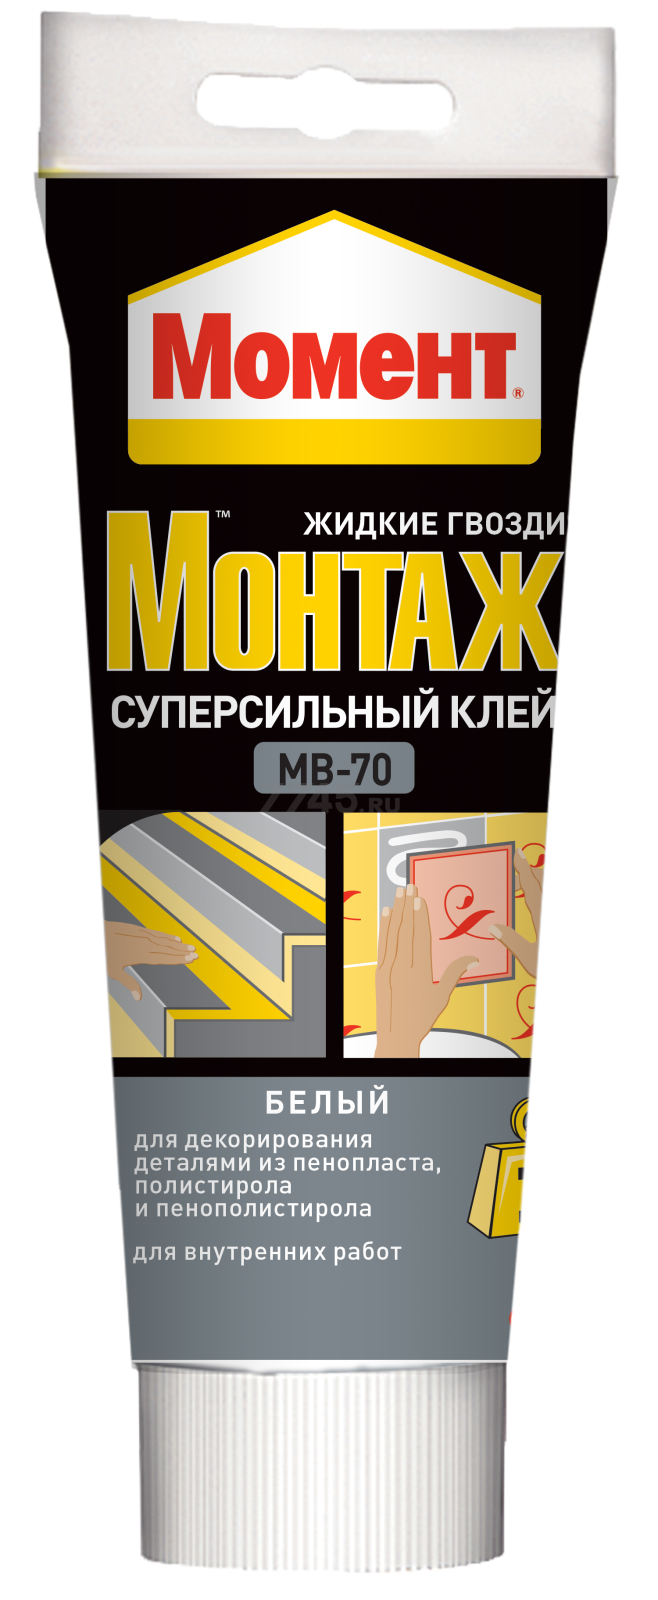 Клей монтажный МОМЕНТ Монтаж суперсильный МВ-70 250 г (1192821)